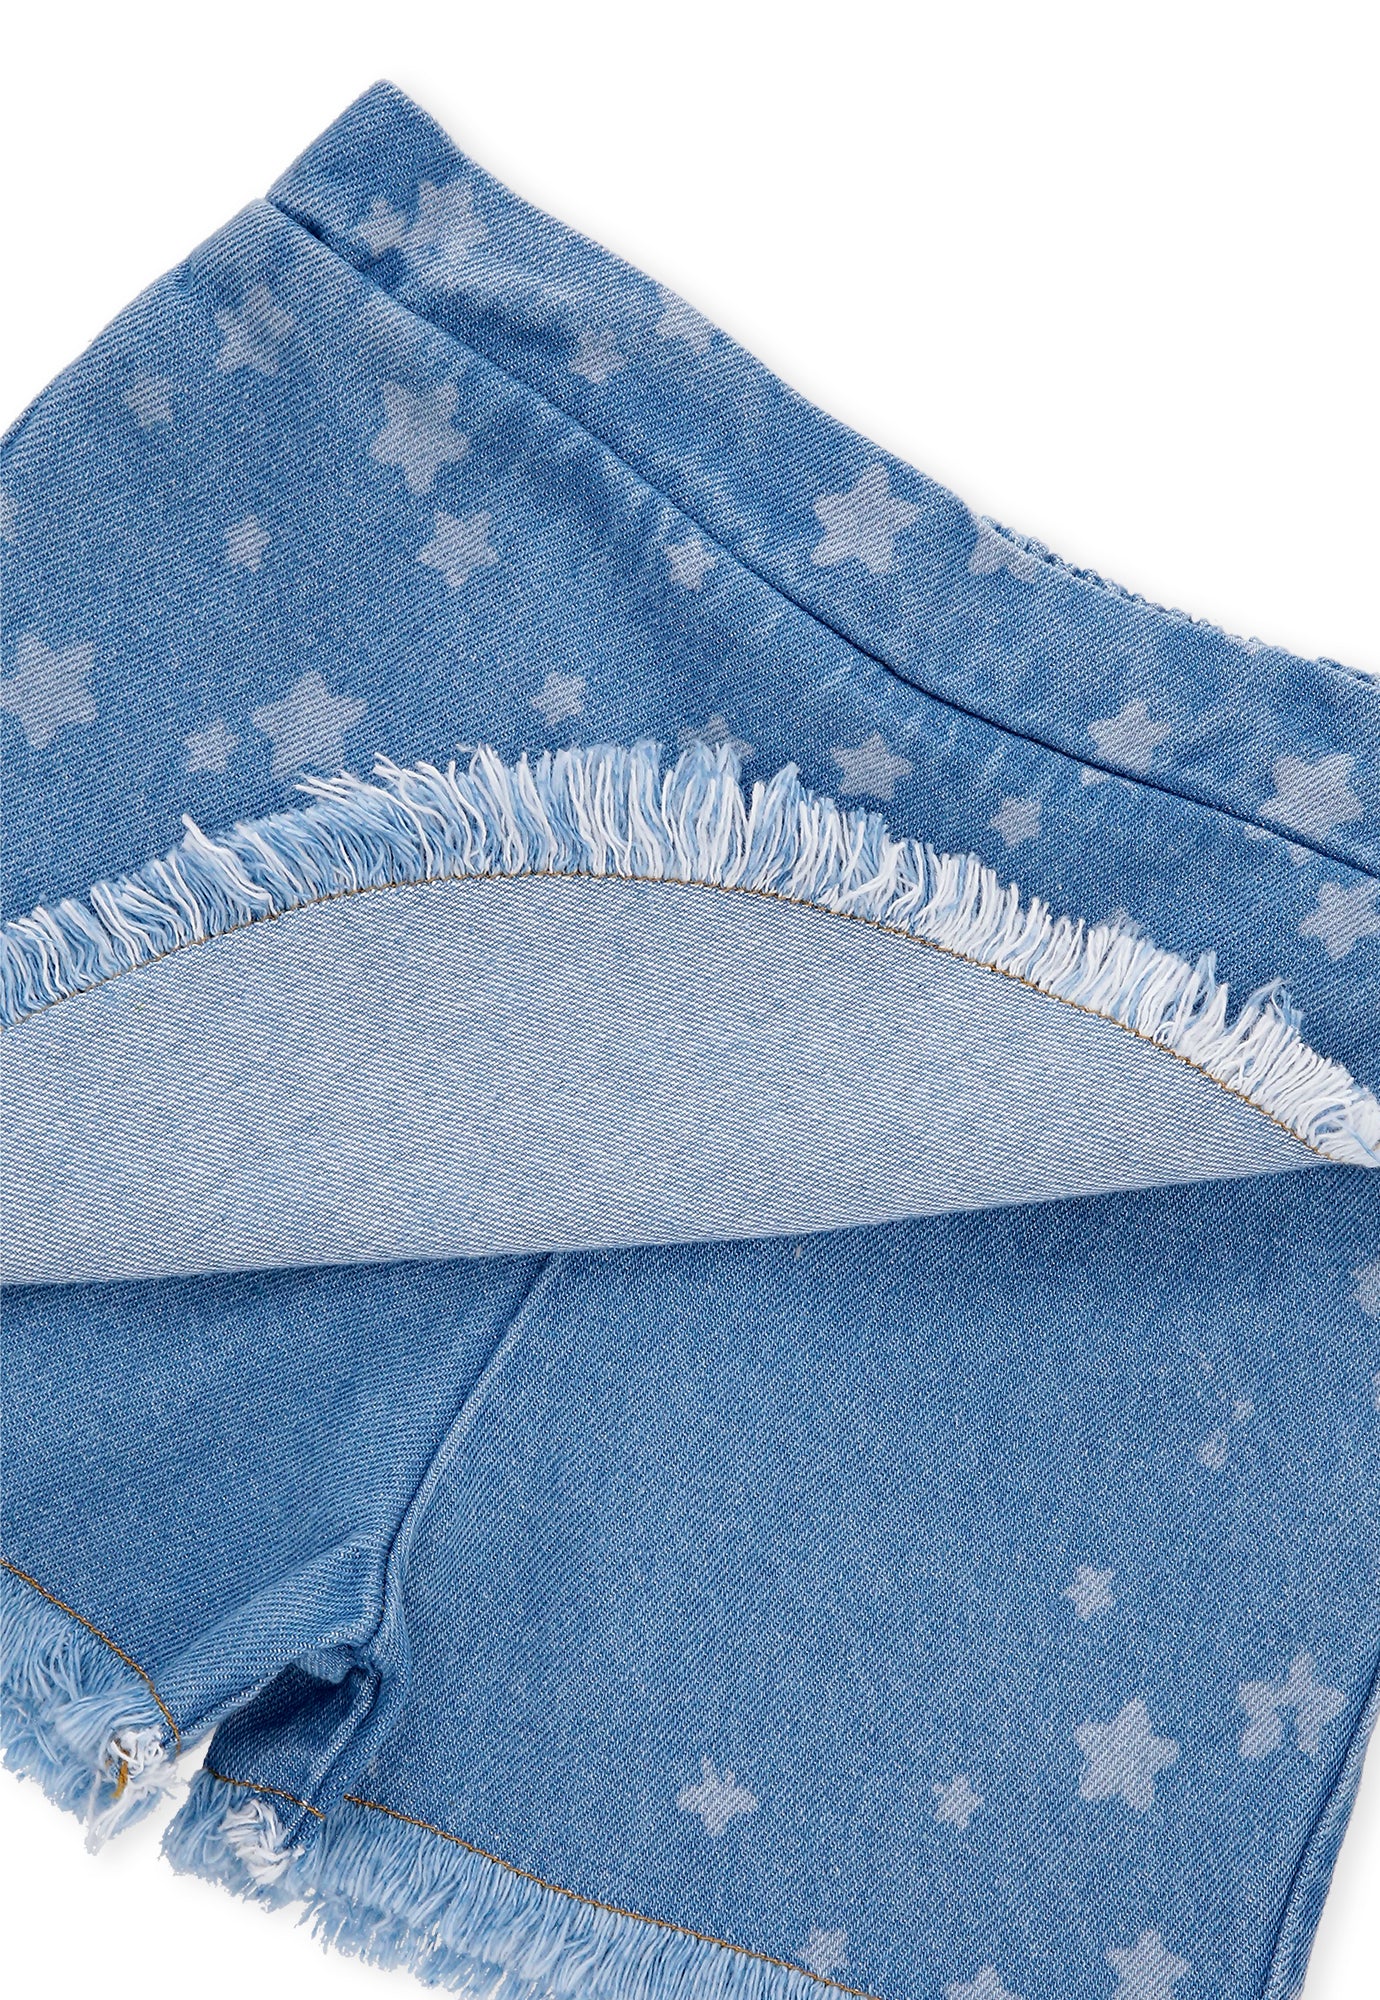 Falda short azul índigo sublimado con cintura elástica para bebé niña